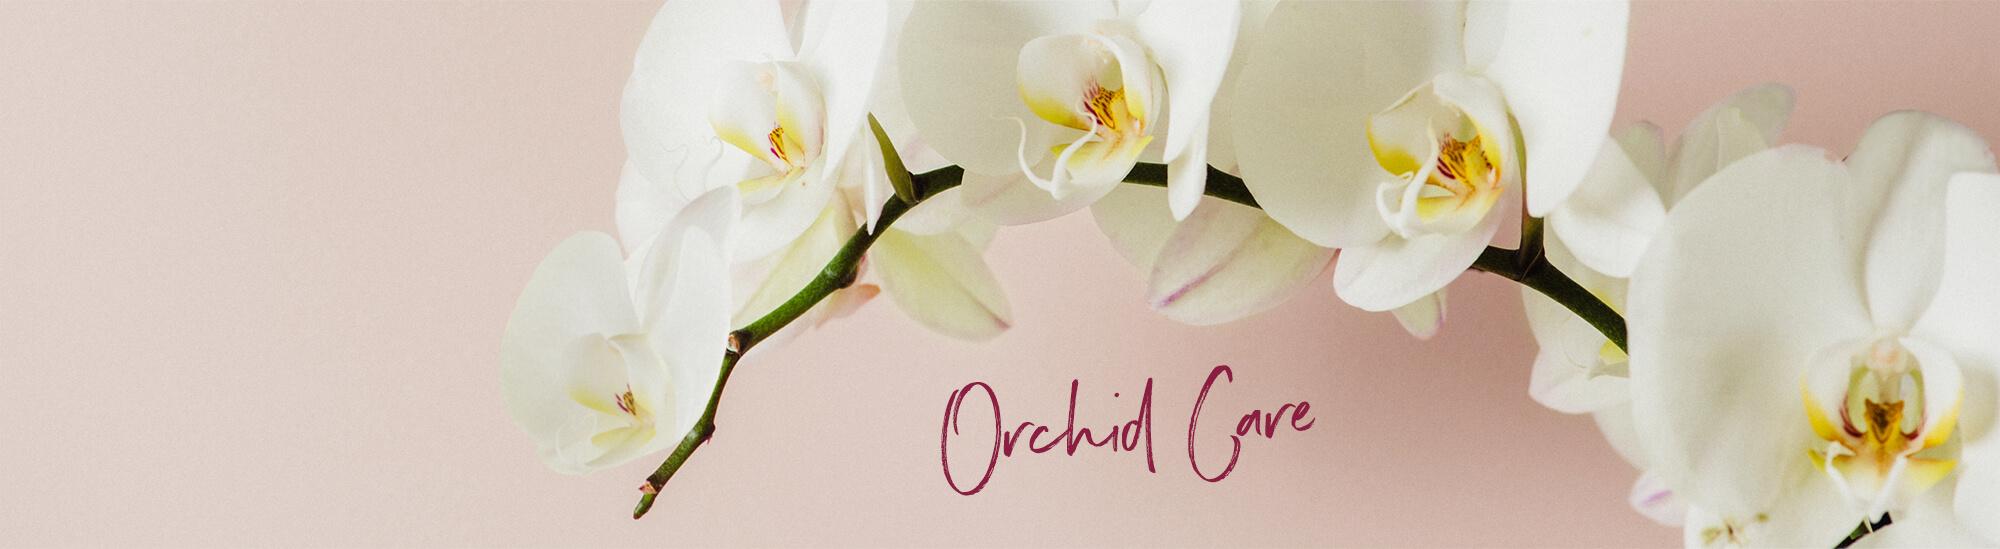 Tipps und Tricks zur Orchideenpflege